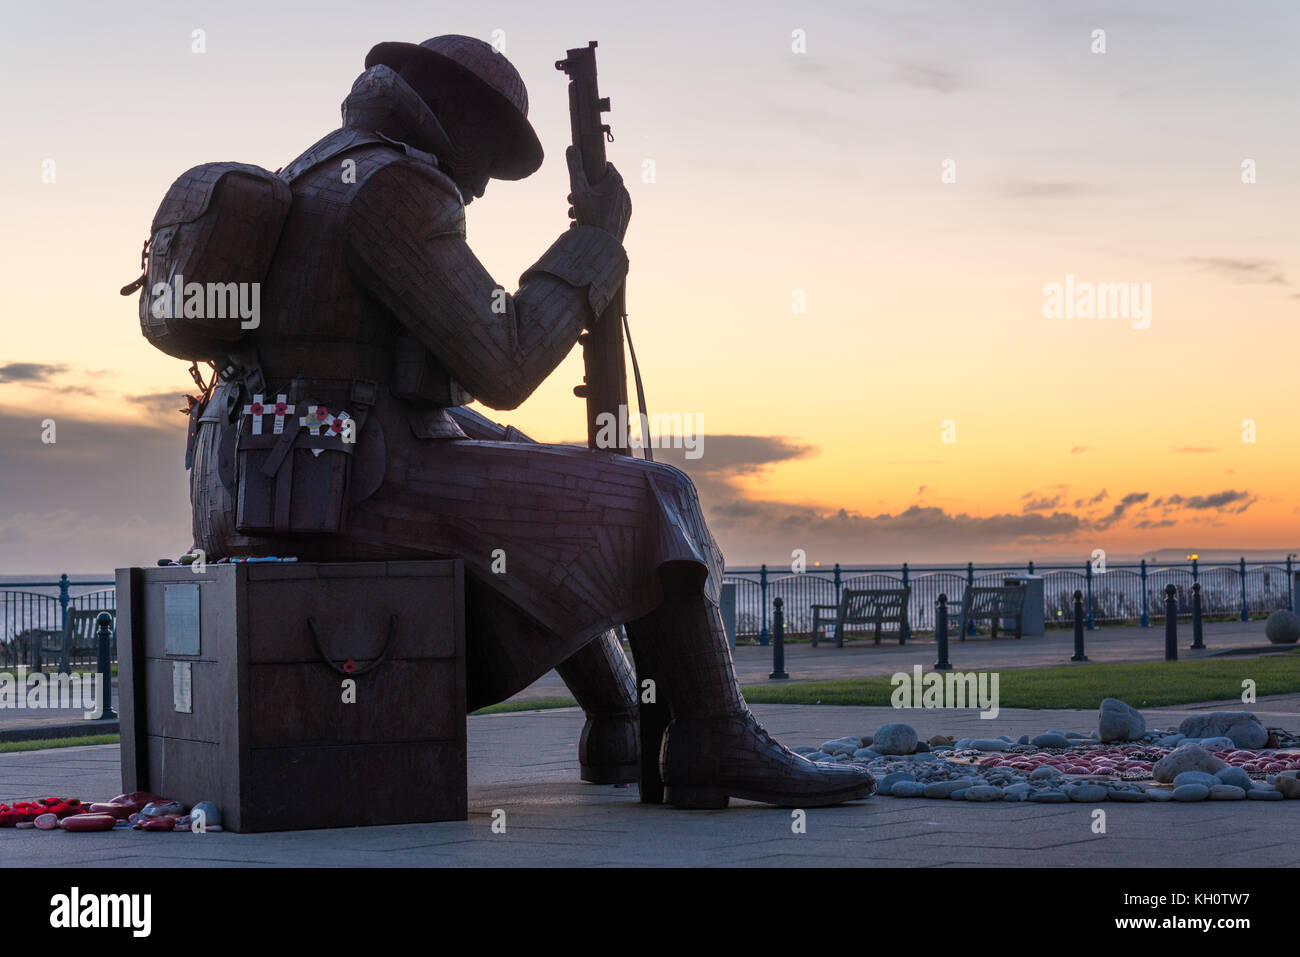 12 novembre 2017. Seaham, Sunderland, Royaume-Uni. L'acier d'une statue représente un soldat appelé localement "Tommy" dans les premières minutes suivant la fin de la première guerre mondiale. La statue a été sculptée par l'artiste local Ray Lonsdale. Robert Smith / AlamyLiveNews Crédit Banque D'Images